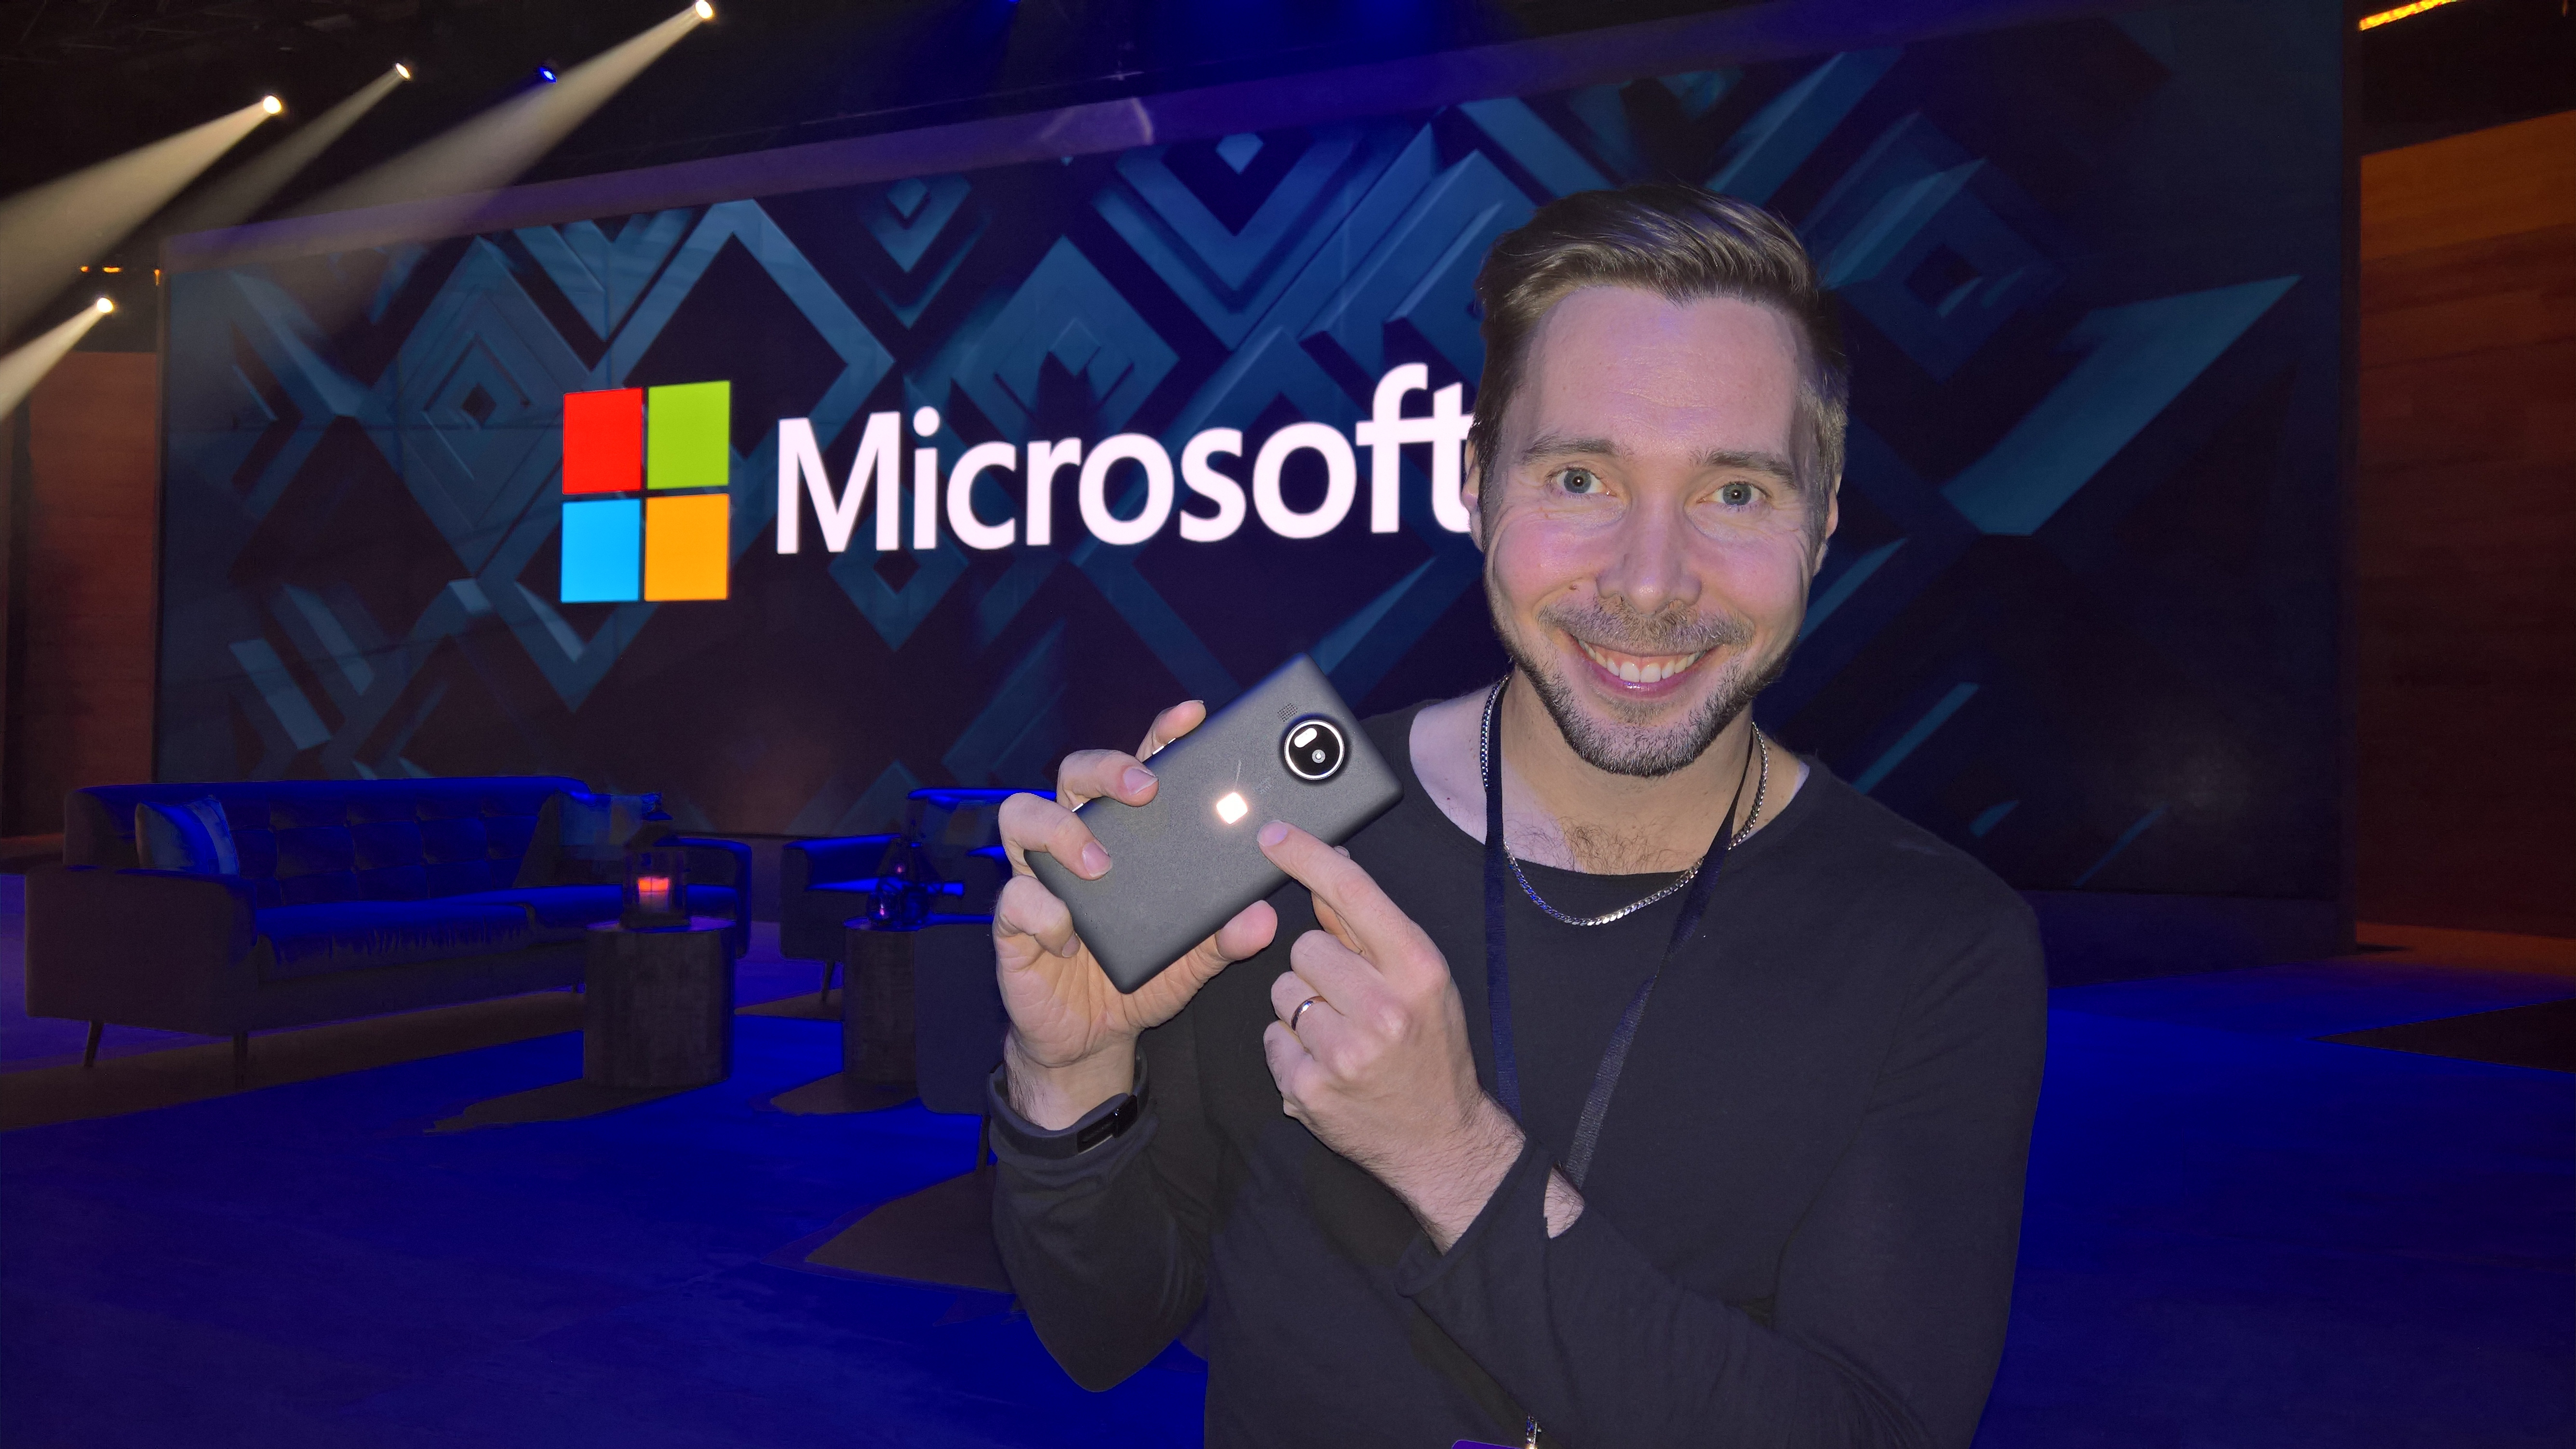 Camera Magic On Microsoft Lumia 950 And Lumia 950 Xl Microsoft